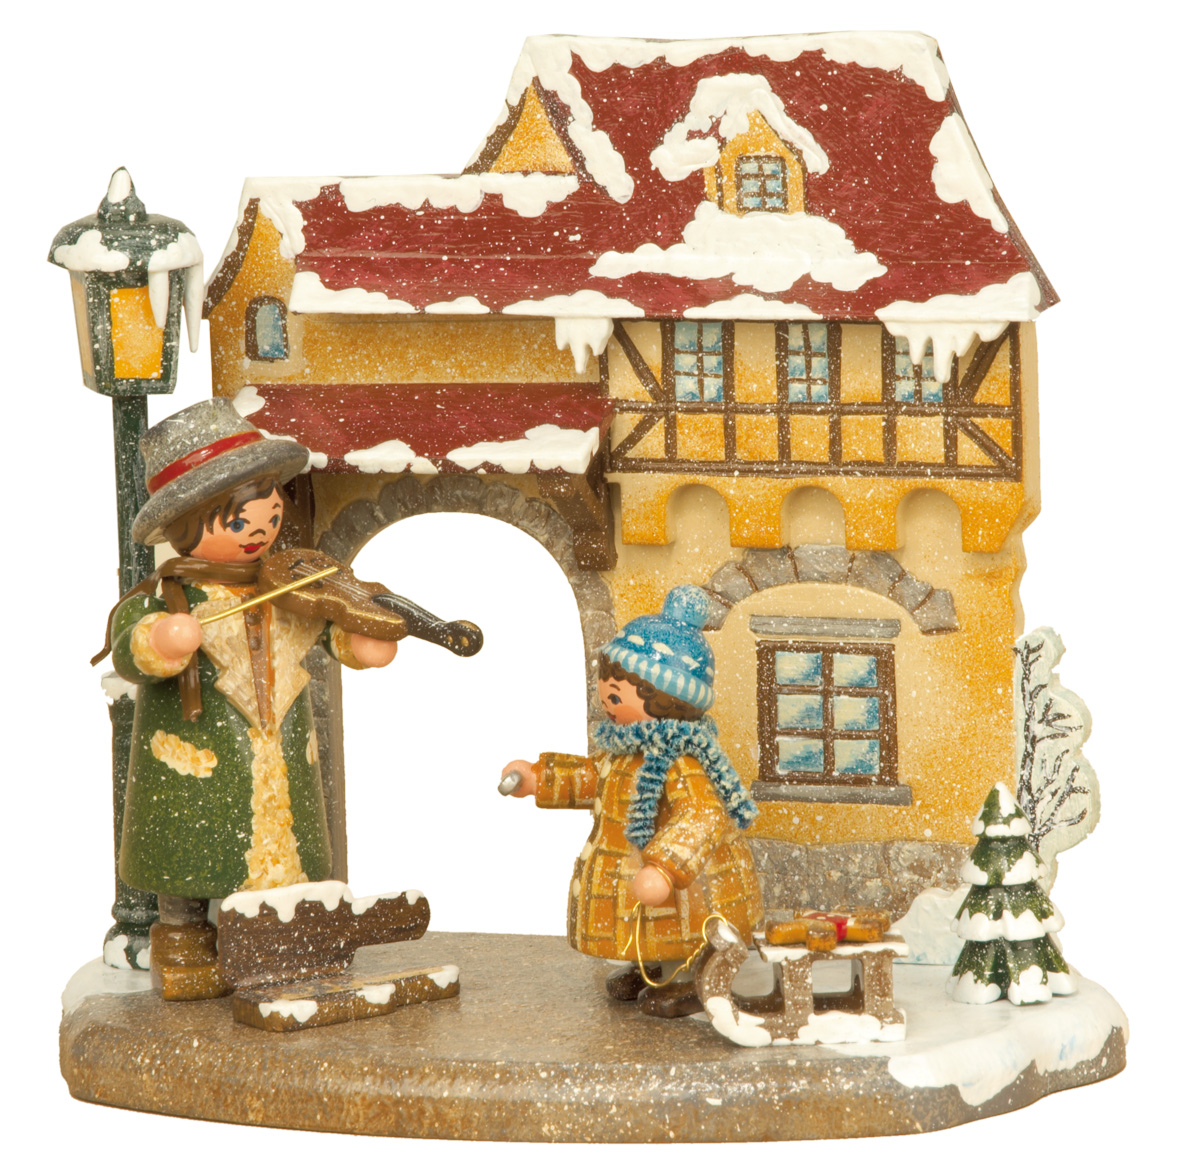 Miniatur Jahreszeit Winter - Hersteller Fa. Hubrig aus Zschorlau im Erzgebirge